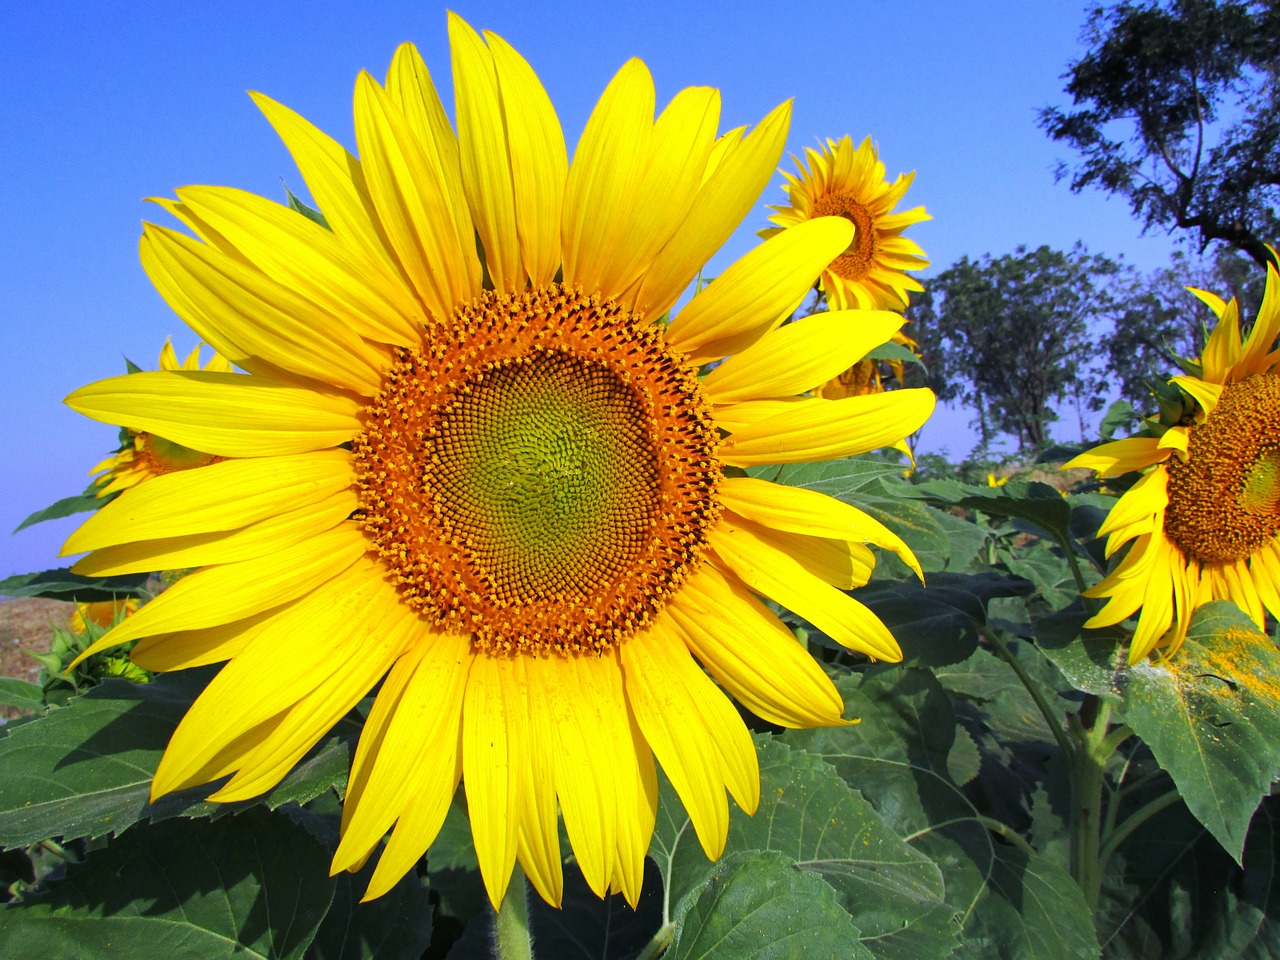 sunflower flower yellow free photo